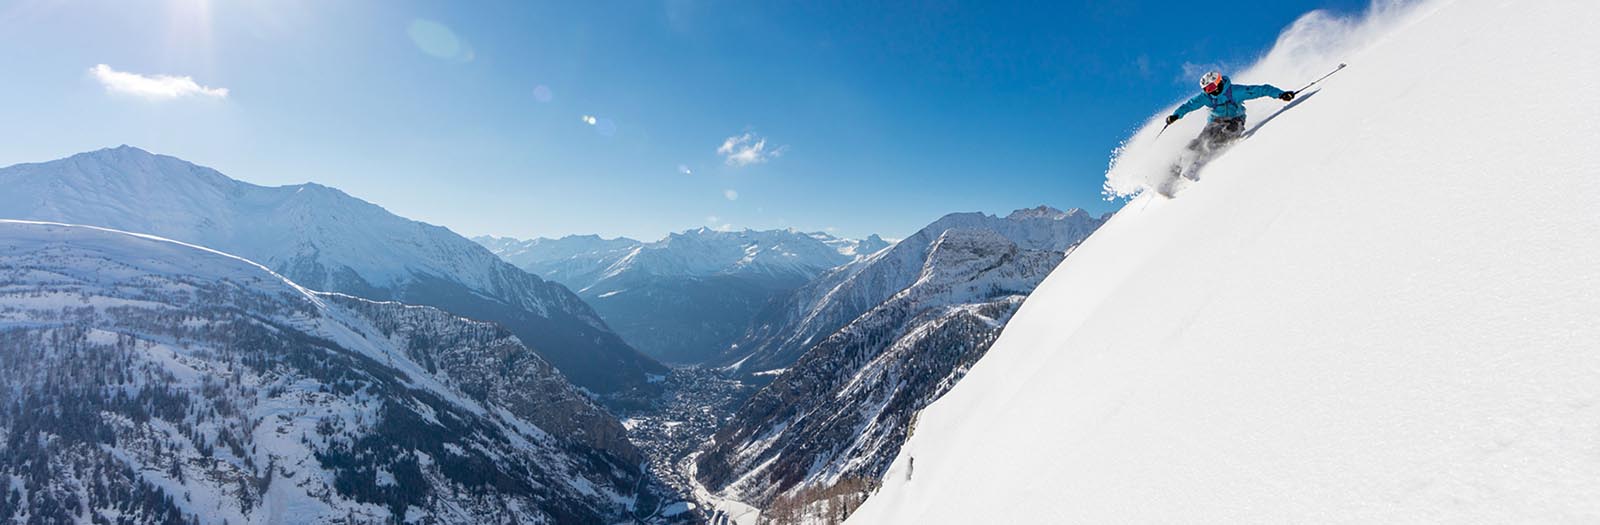 italy ski resorts, Italian ski vacations, European ski vacations